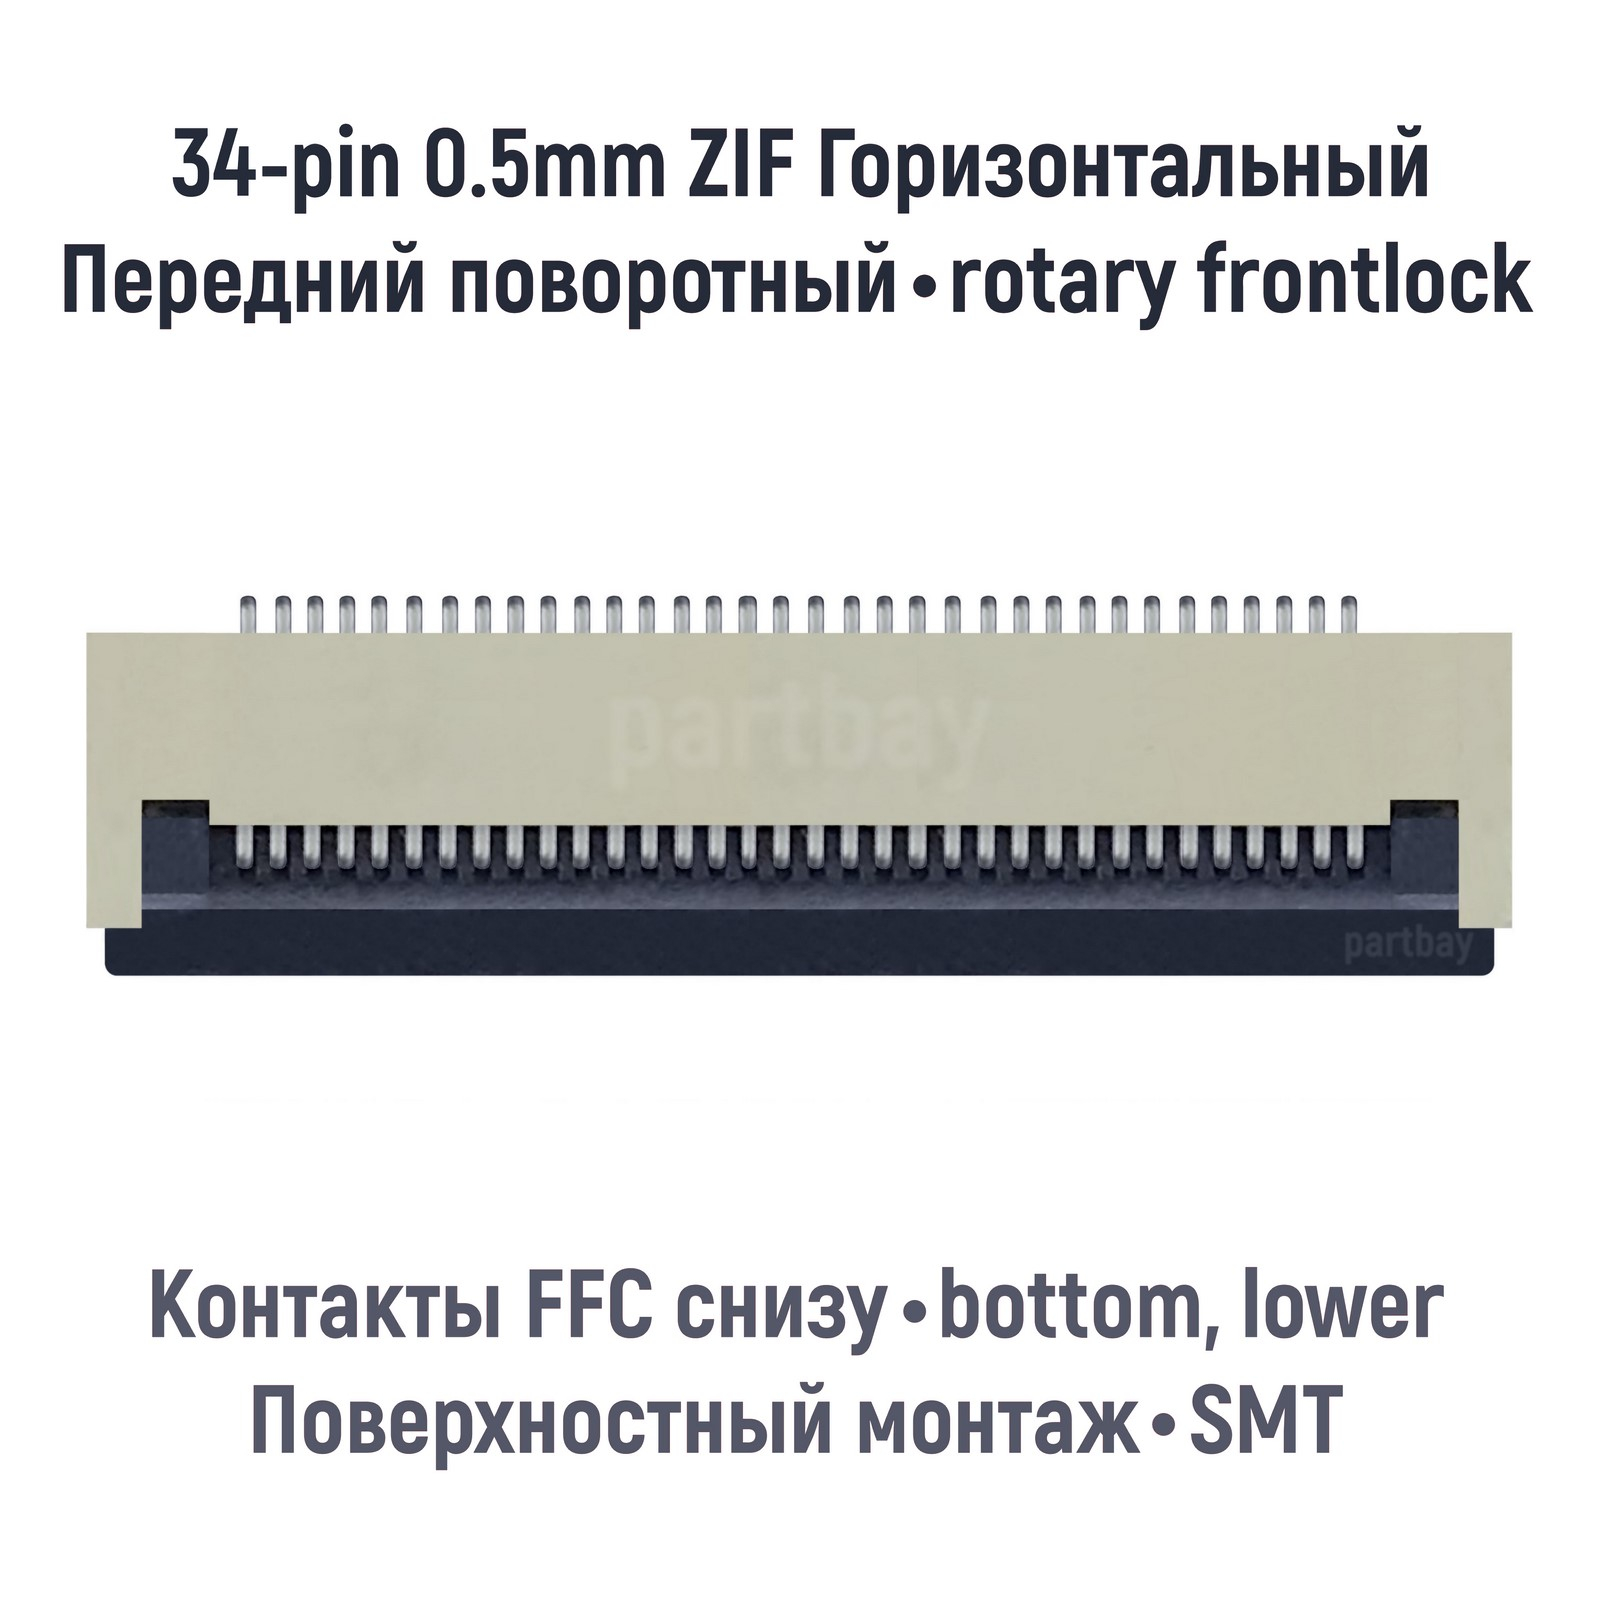 Коннектор OEM для FFC FPC шлейфа 34-pin шаг 0.5mm ZIF